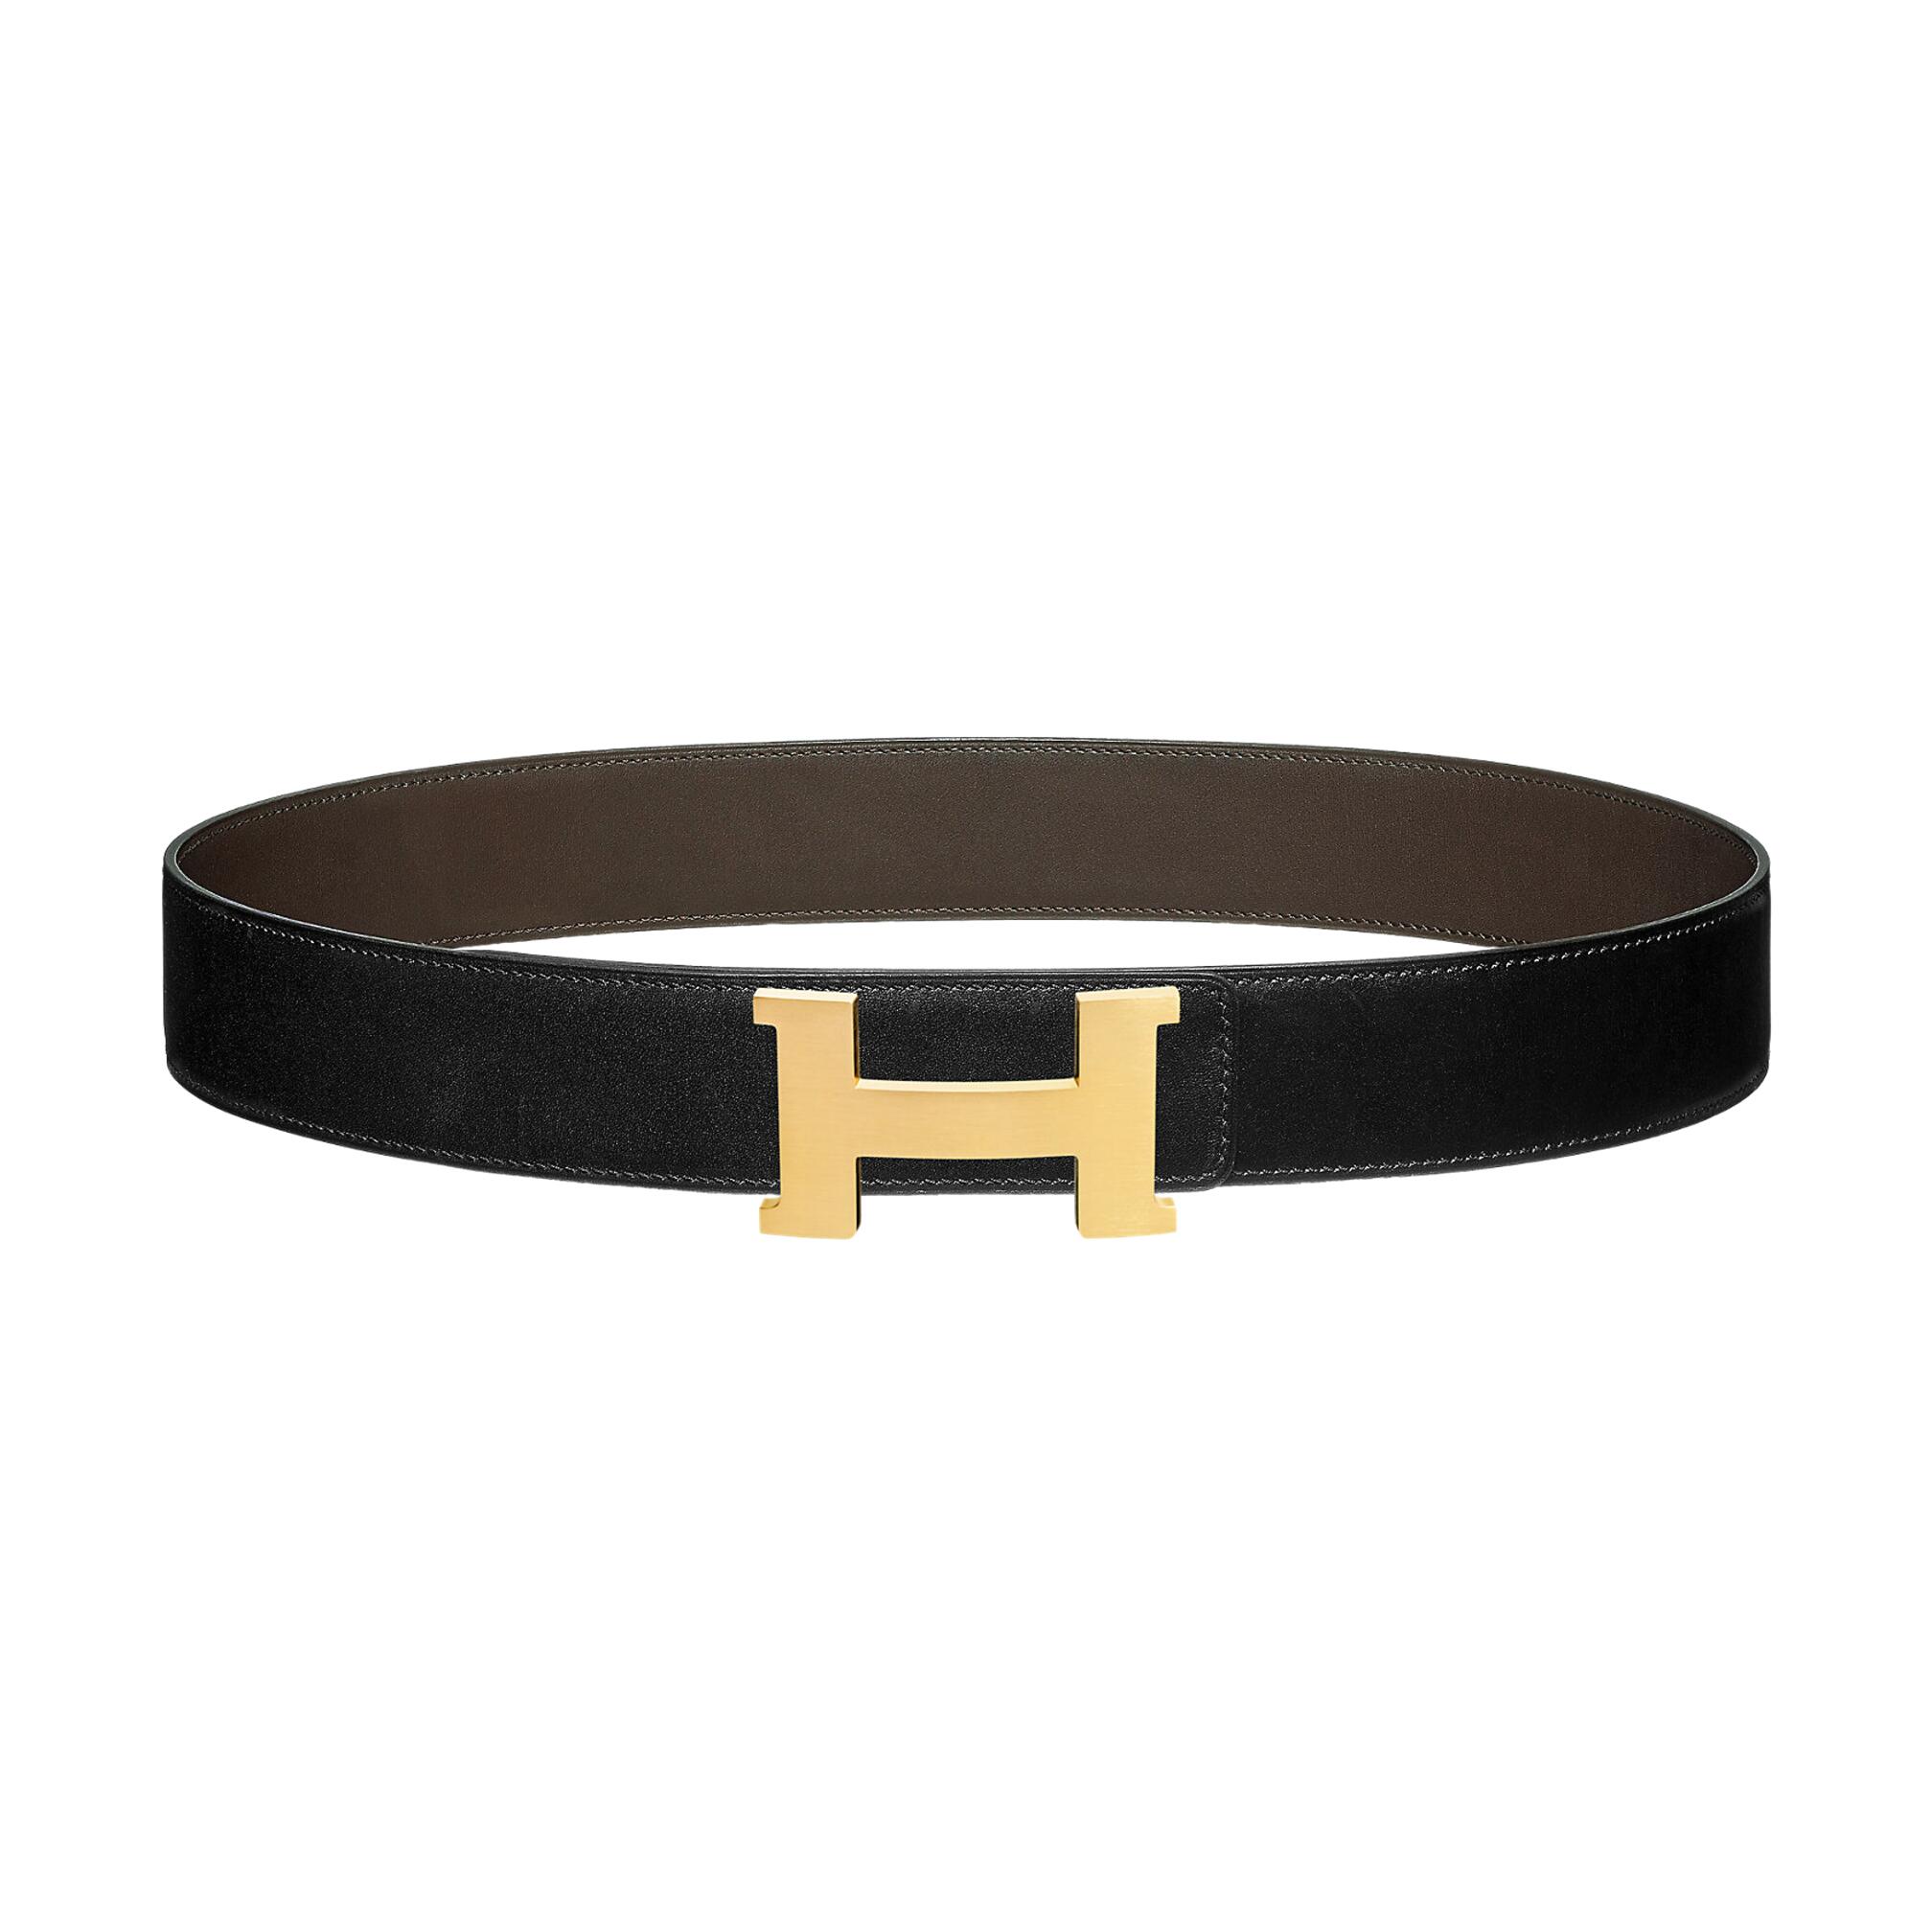 Hermes Belt for sale in UK | 75 used Hermes Belts